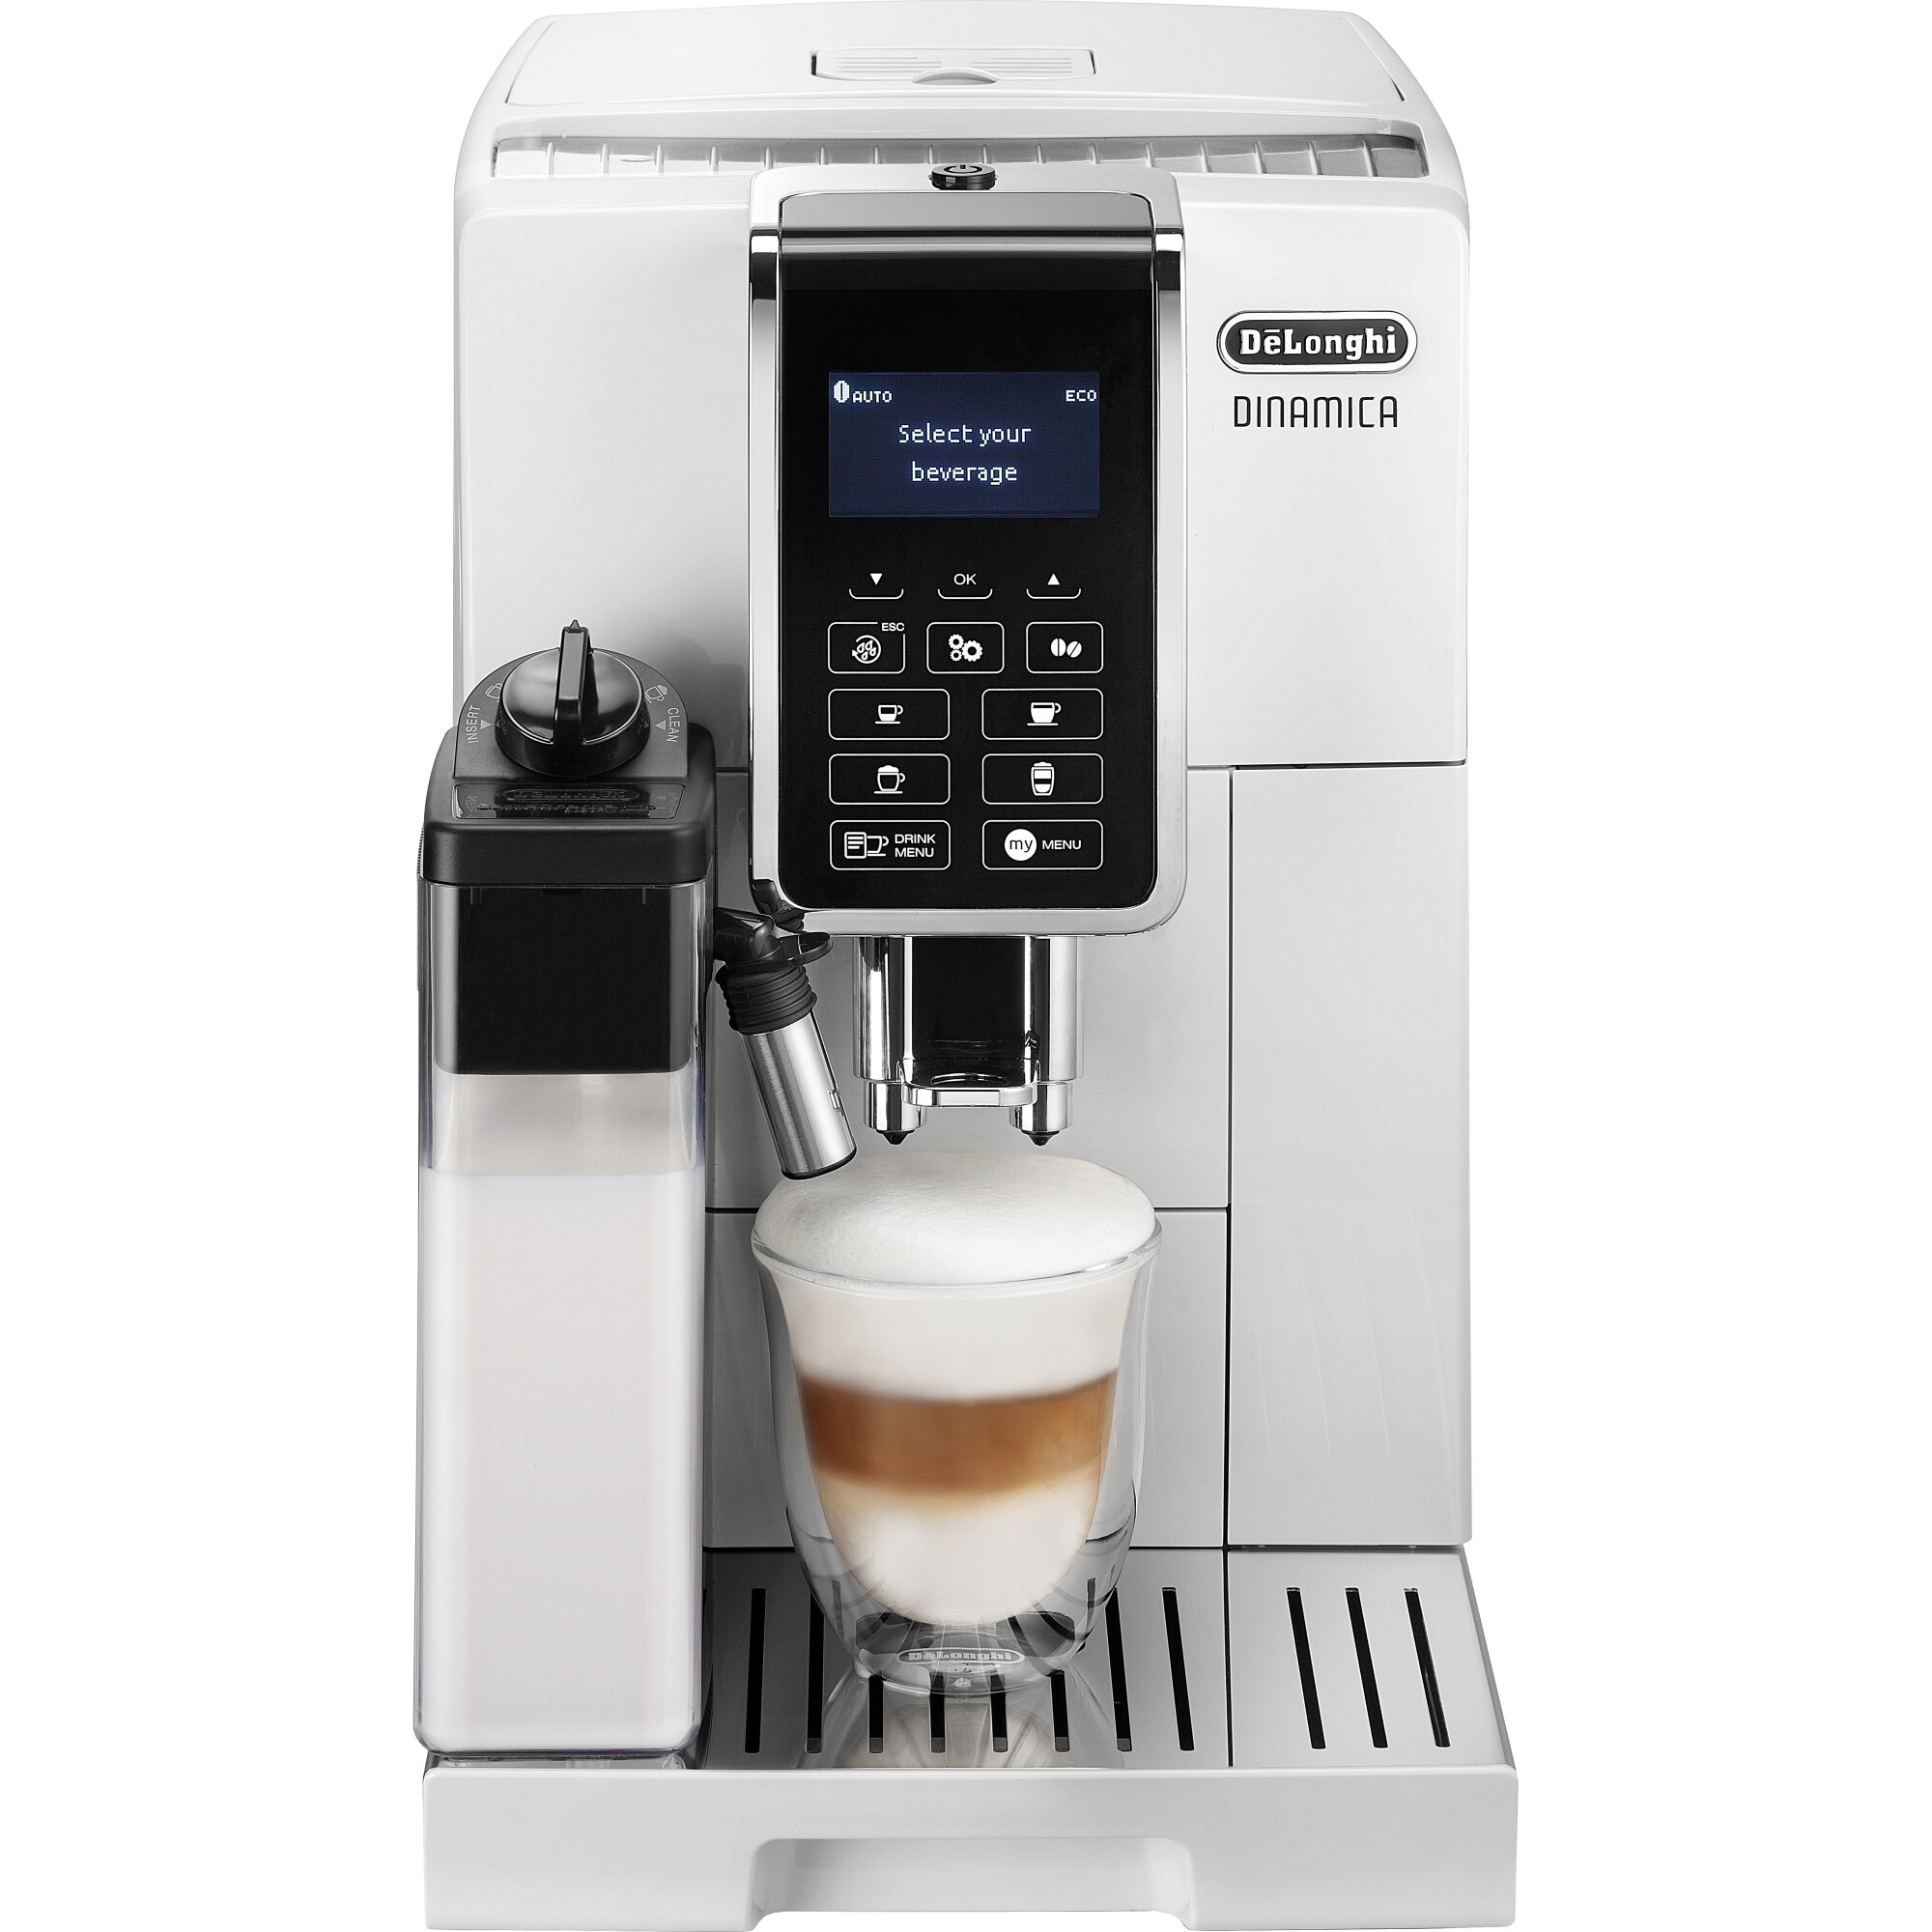 Fotografie Espressor automat De’Longhi Dinamica ECAM 350.55.W, Carafa pentru lapte, Sistem LatteCrema, Rasnita cu 13 setari, 1450 W, 15 bar, 1.8 l, Alb